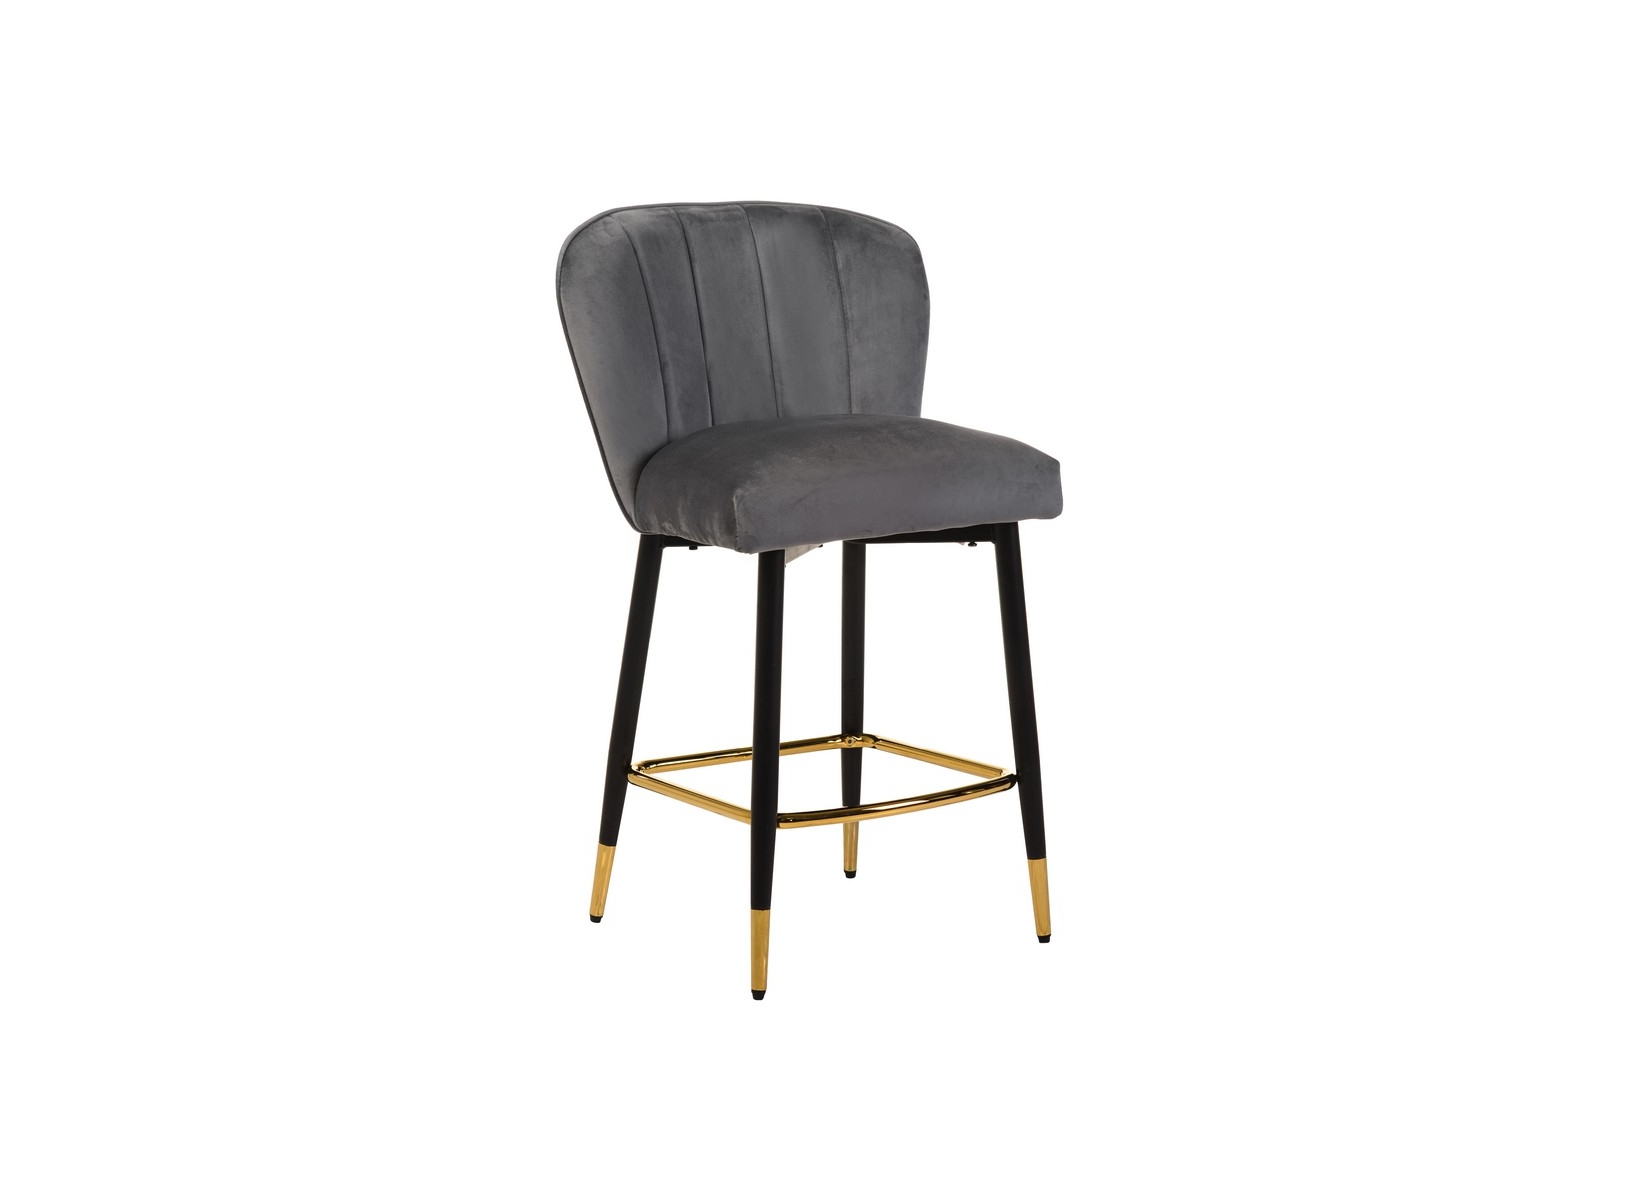 Полубарный мягкий стул с металлическими ножками B-126 (серый, черный)